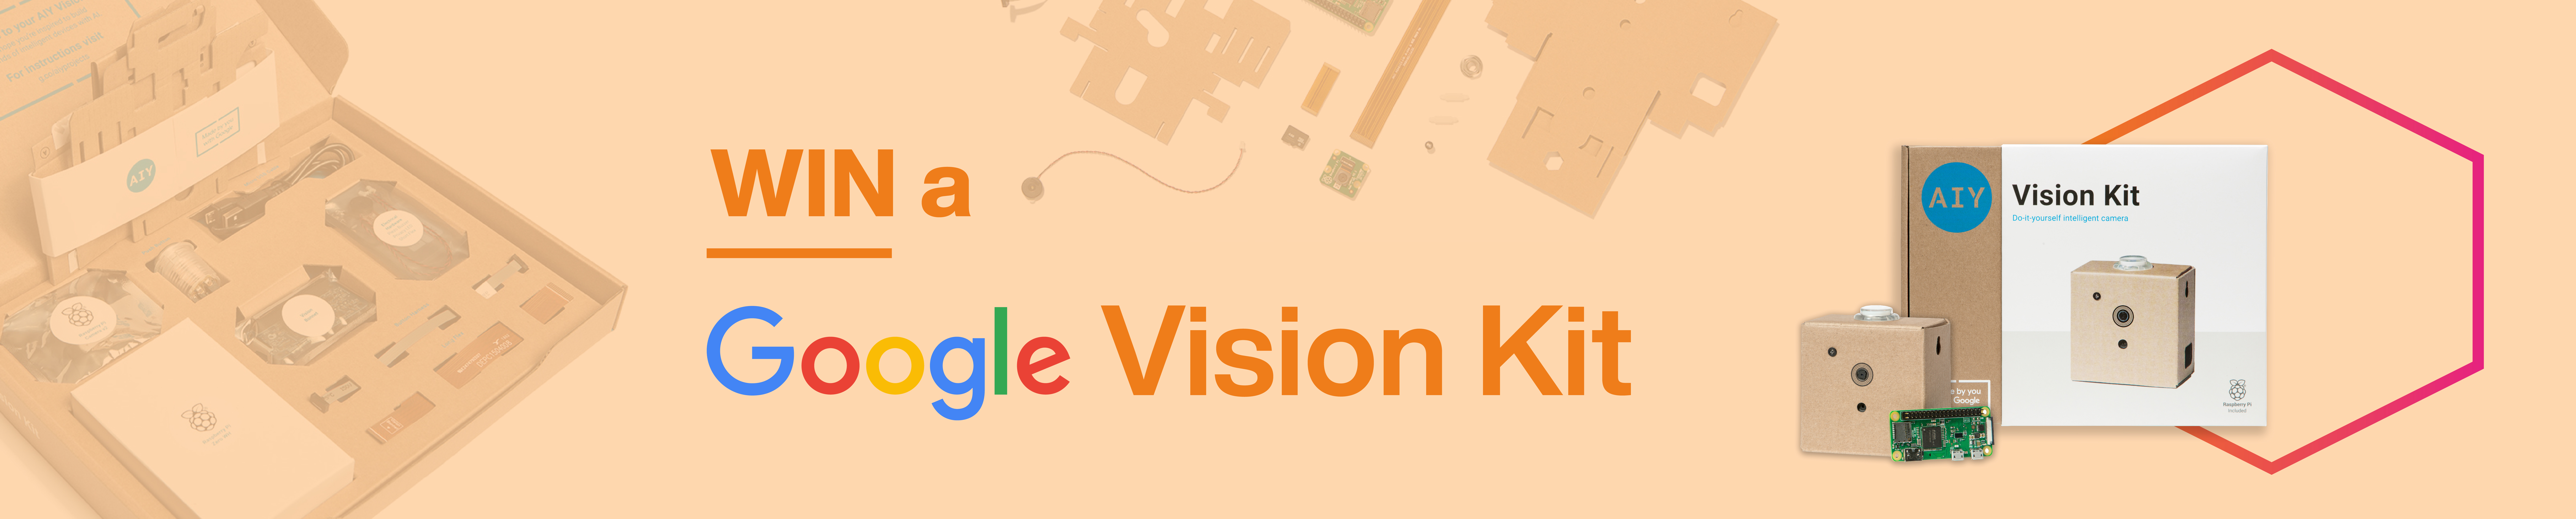 Win a Google AIY Vision kit!